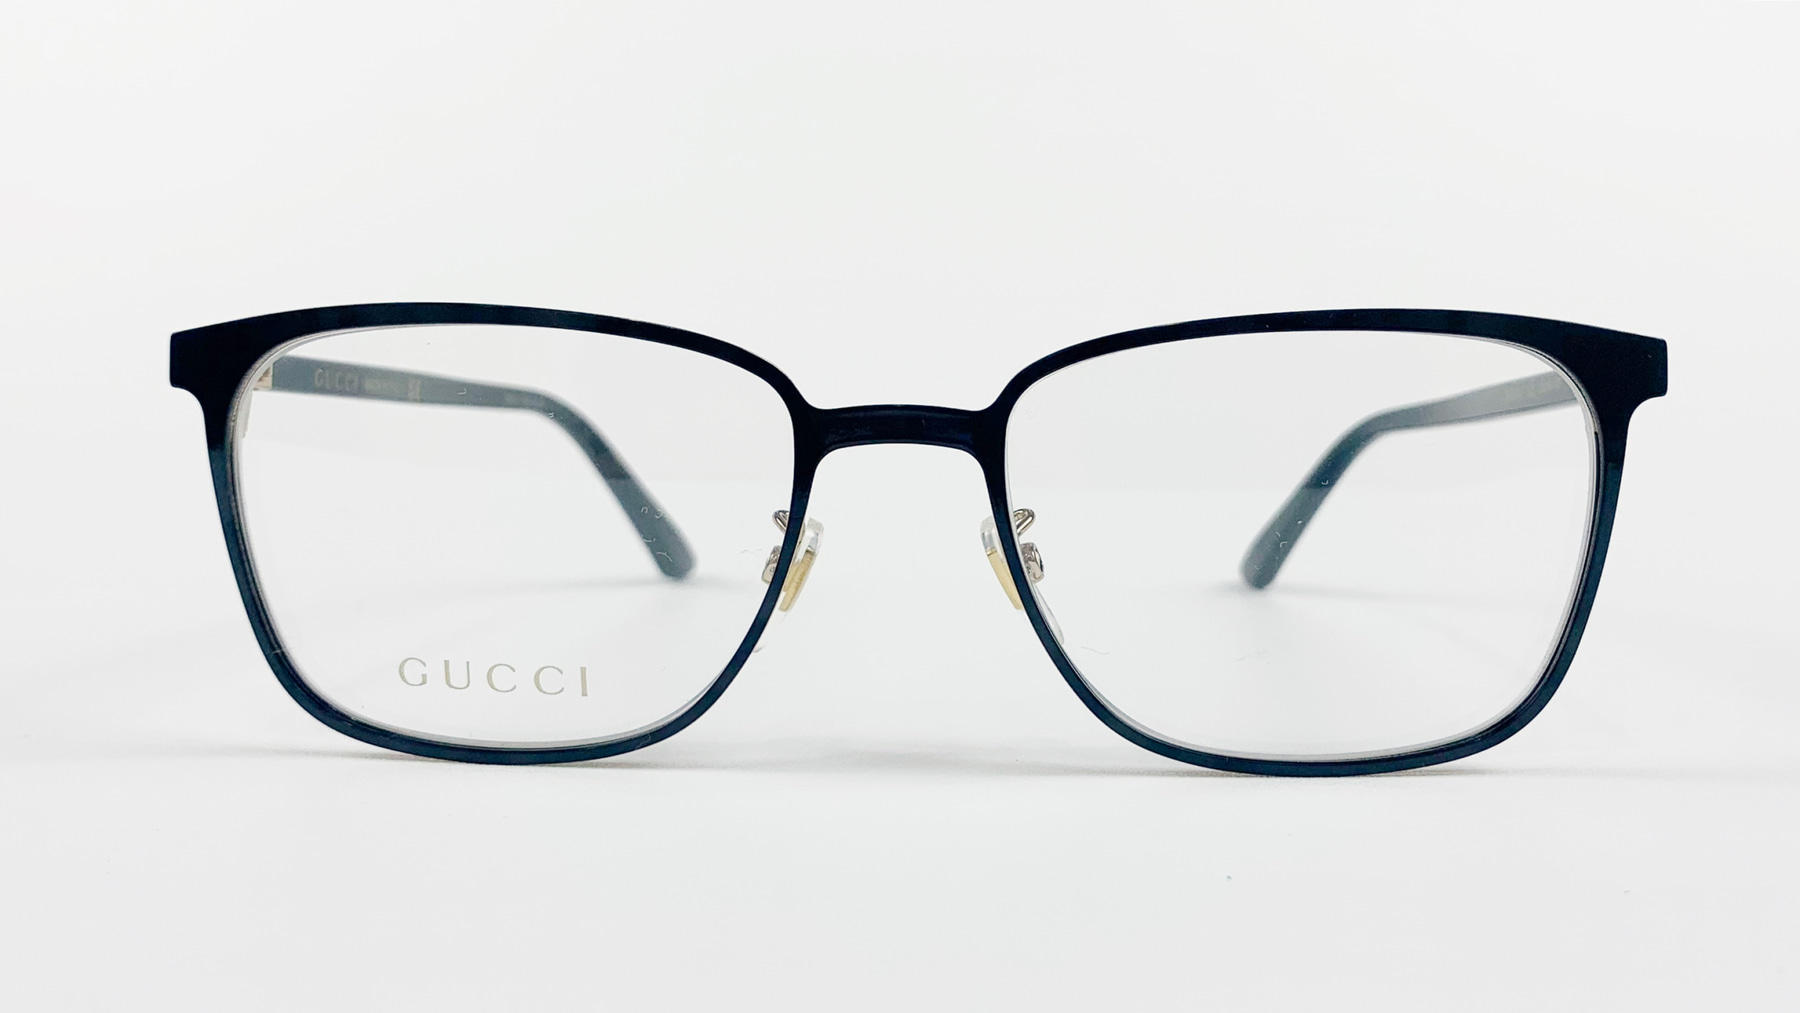 GUCCI GG0294O, Korean glasses, sunglasses, eyeglasses, glasses